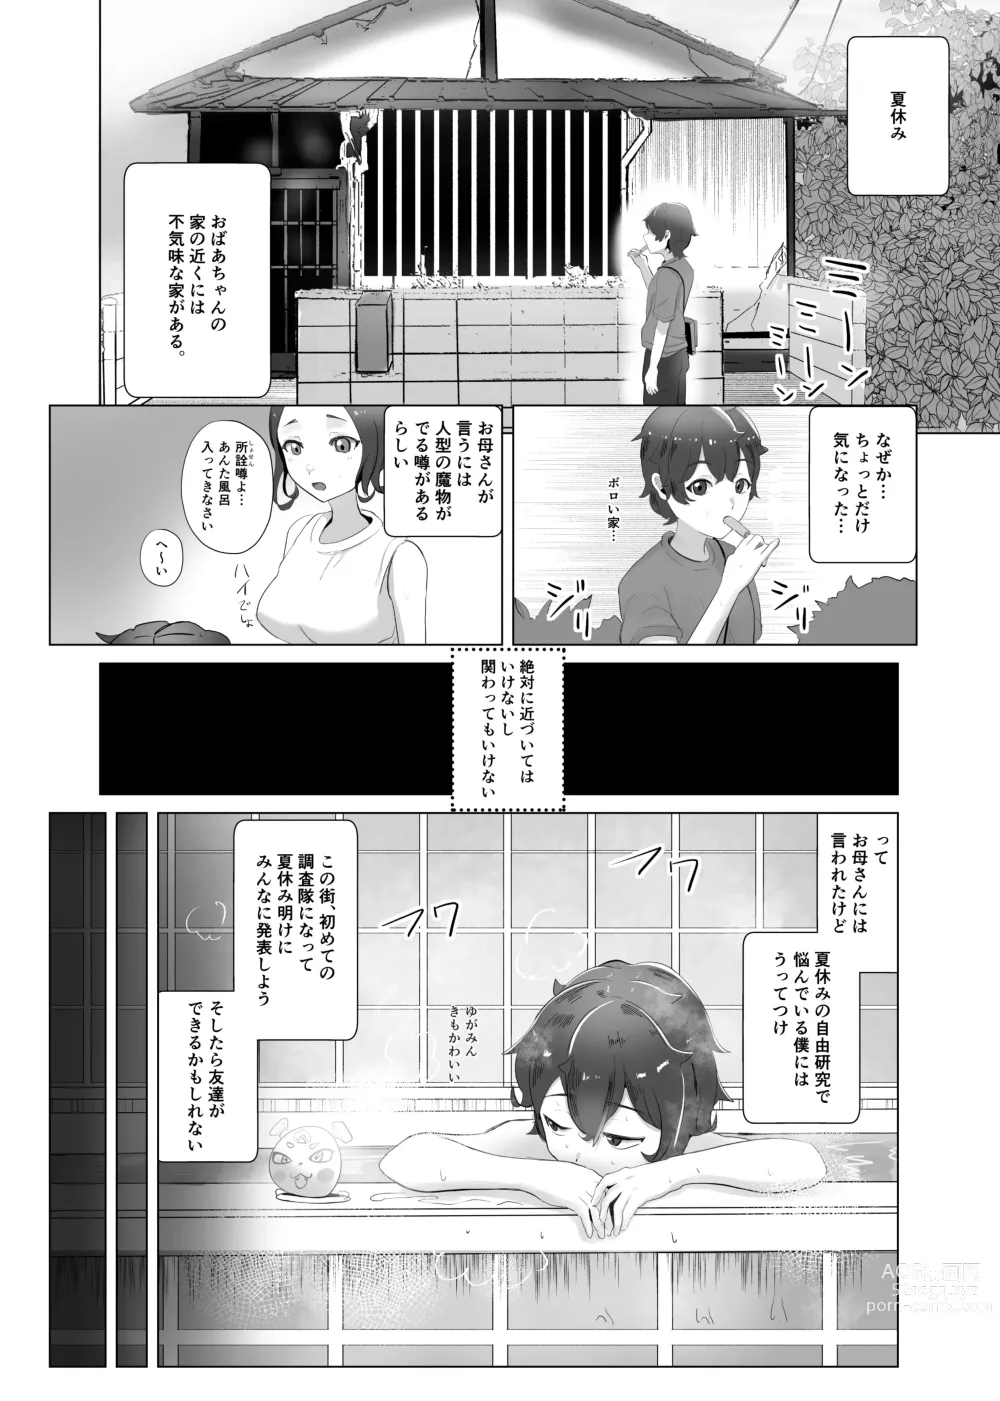 Page 2 of doujinshi Ma Natsu ni majin no Kimi to naisho no koto